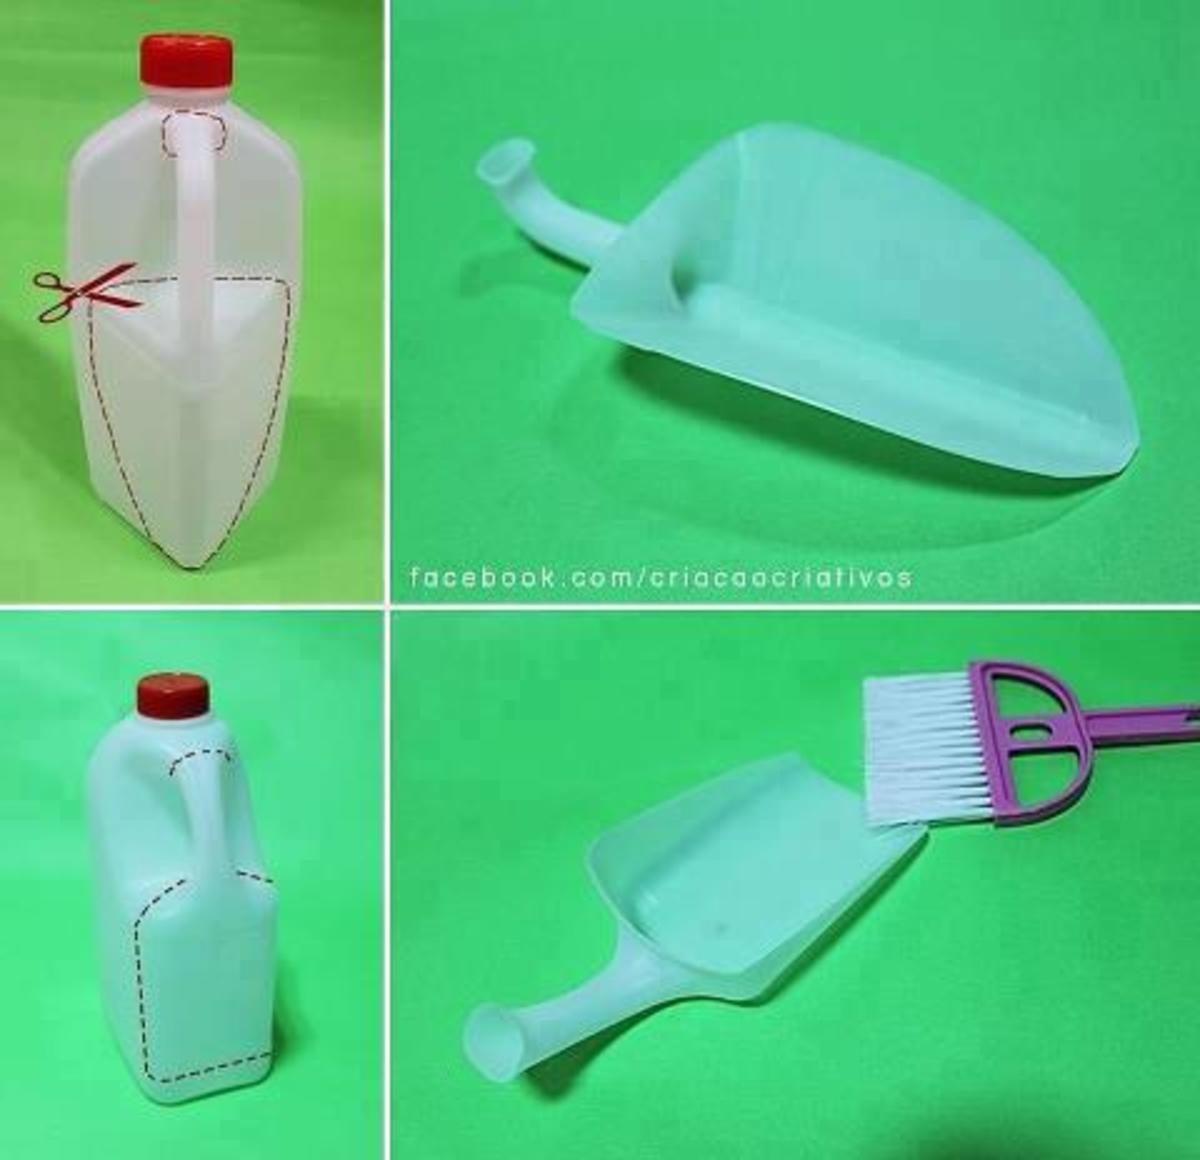 Πρακτικό tip ανακύκλωσης πλαστικών μπουκαλιών!